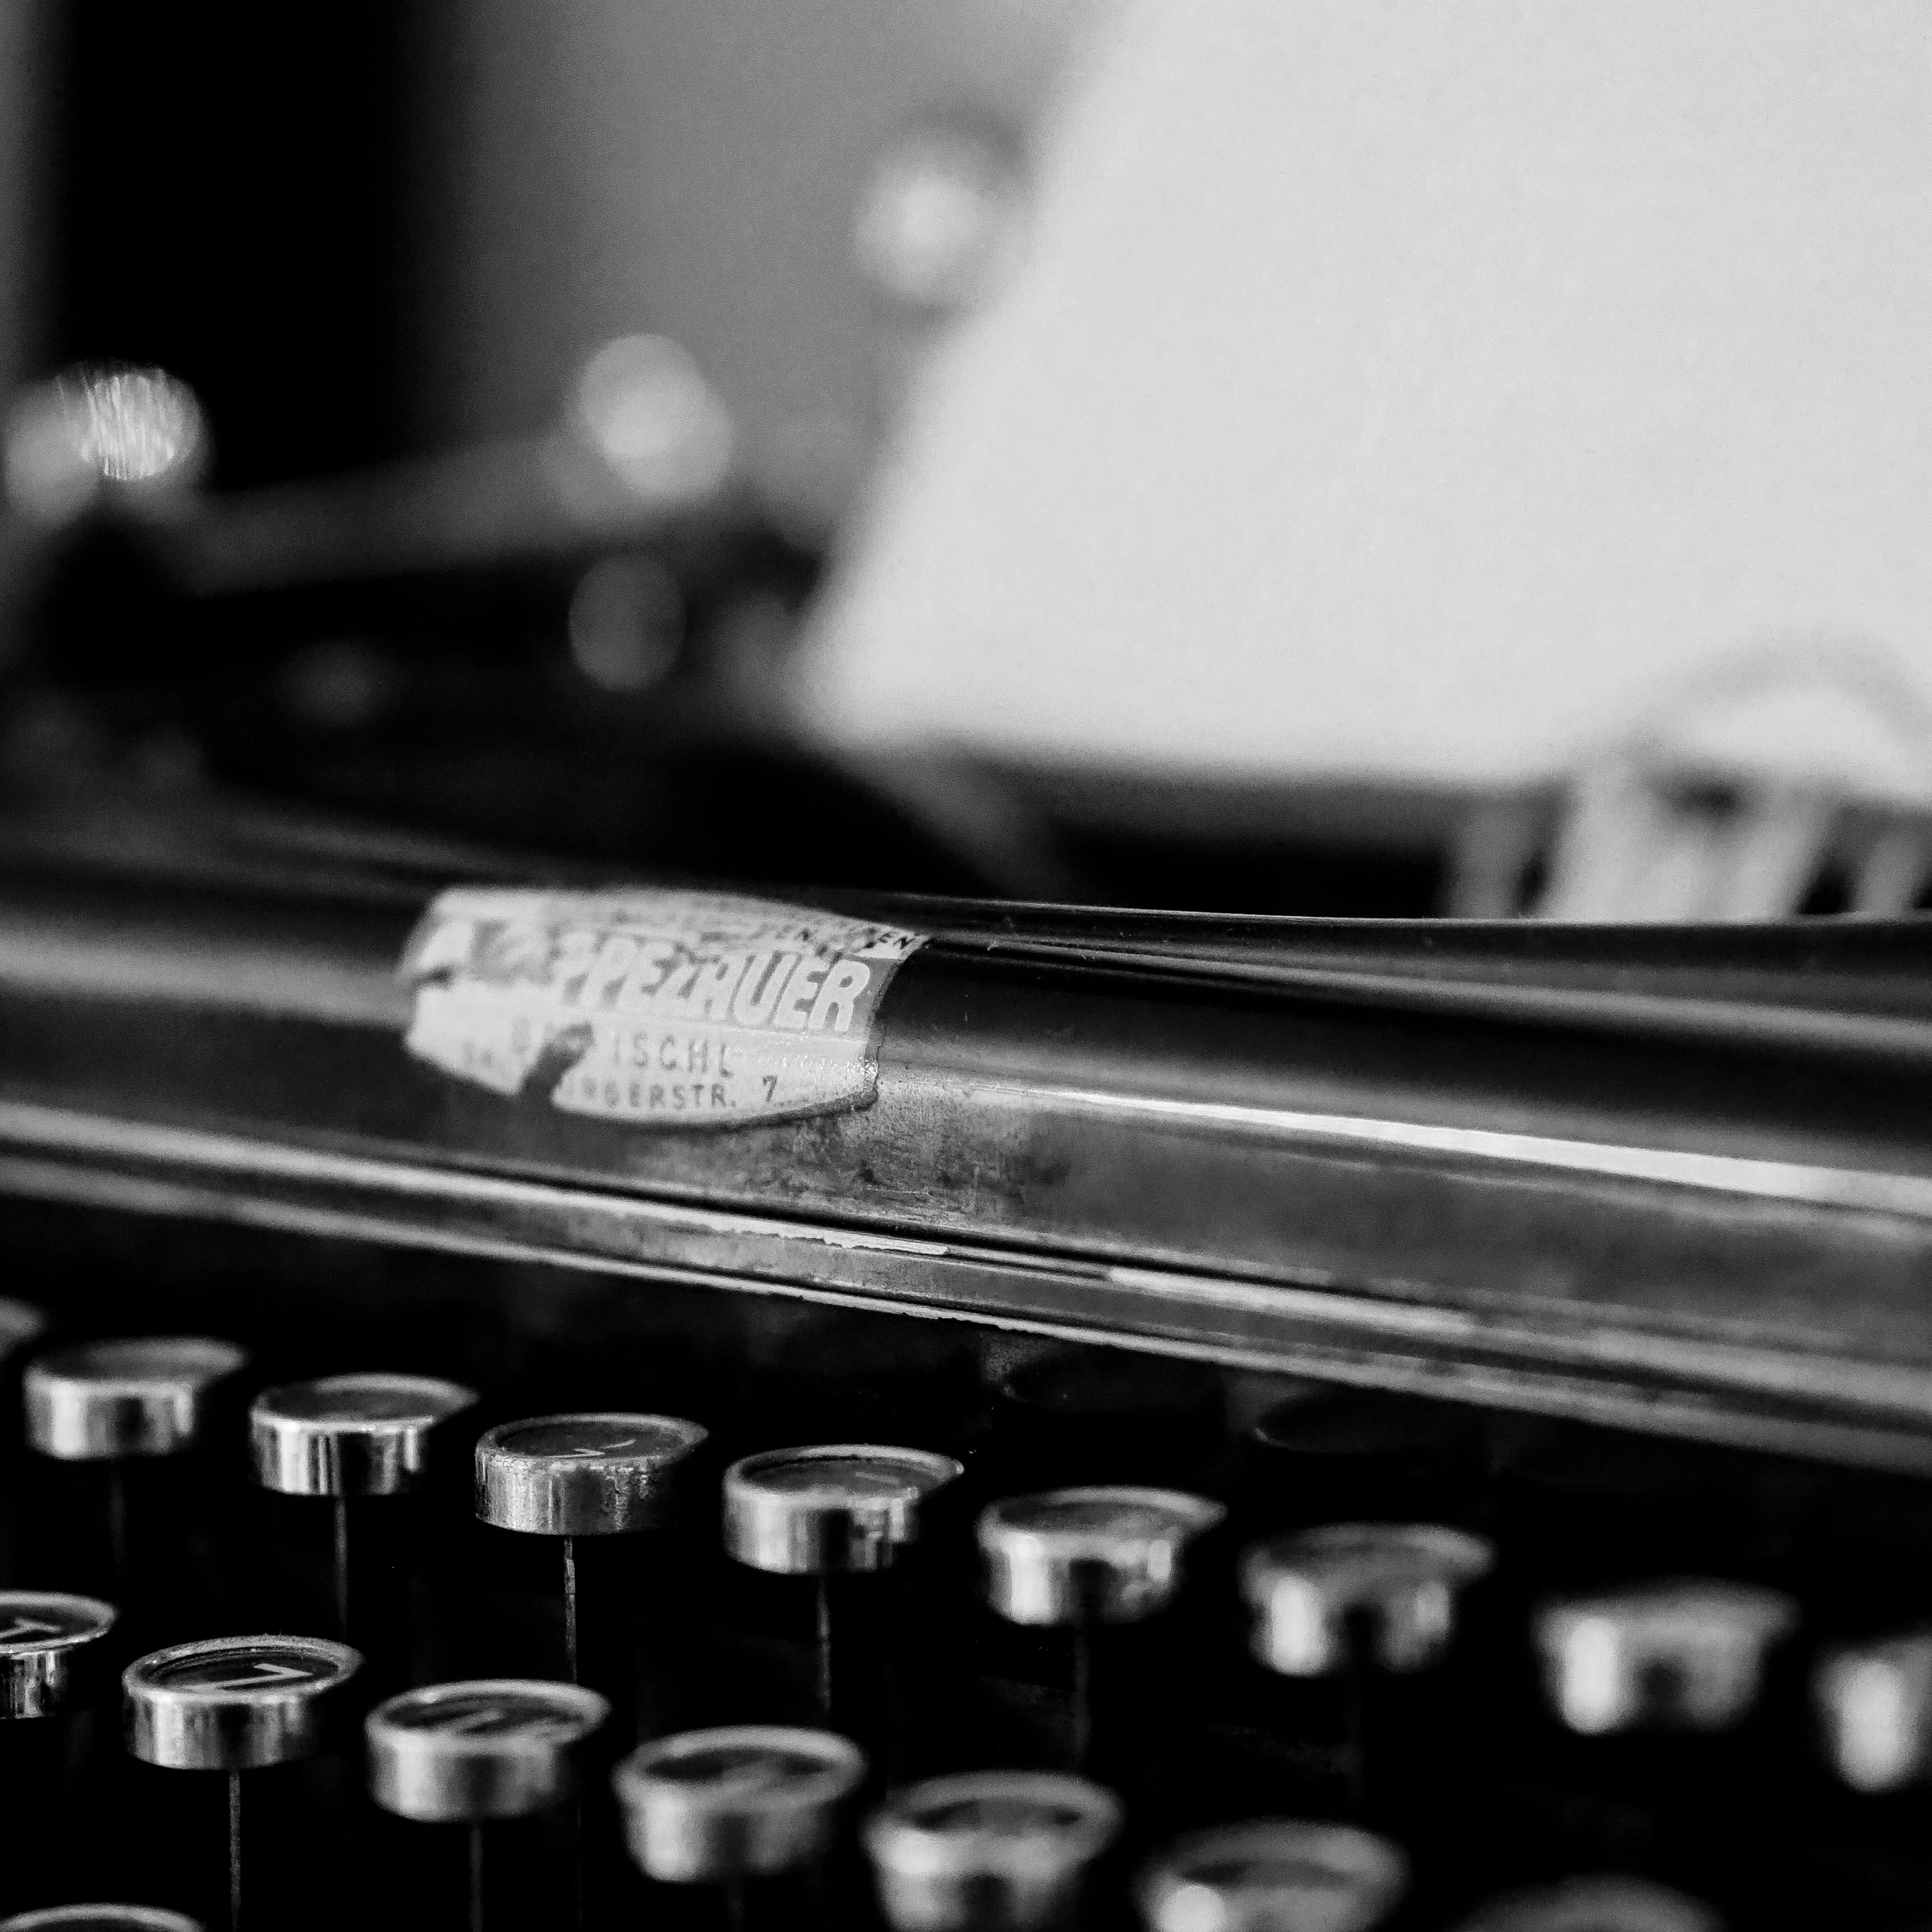 How to Prepare a Short Fiction Manuscript for Publication